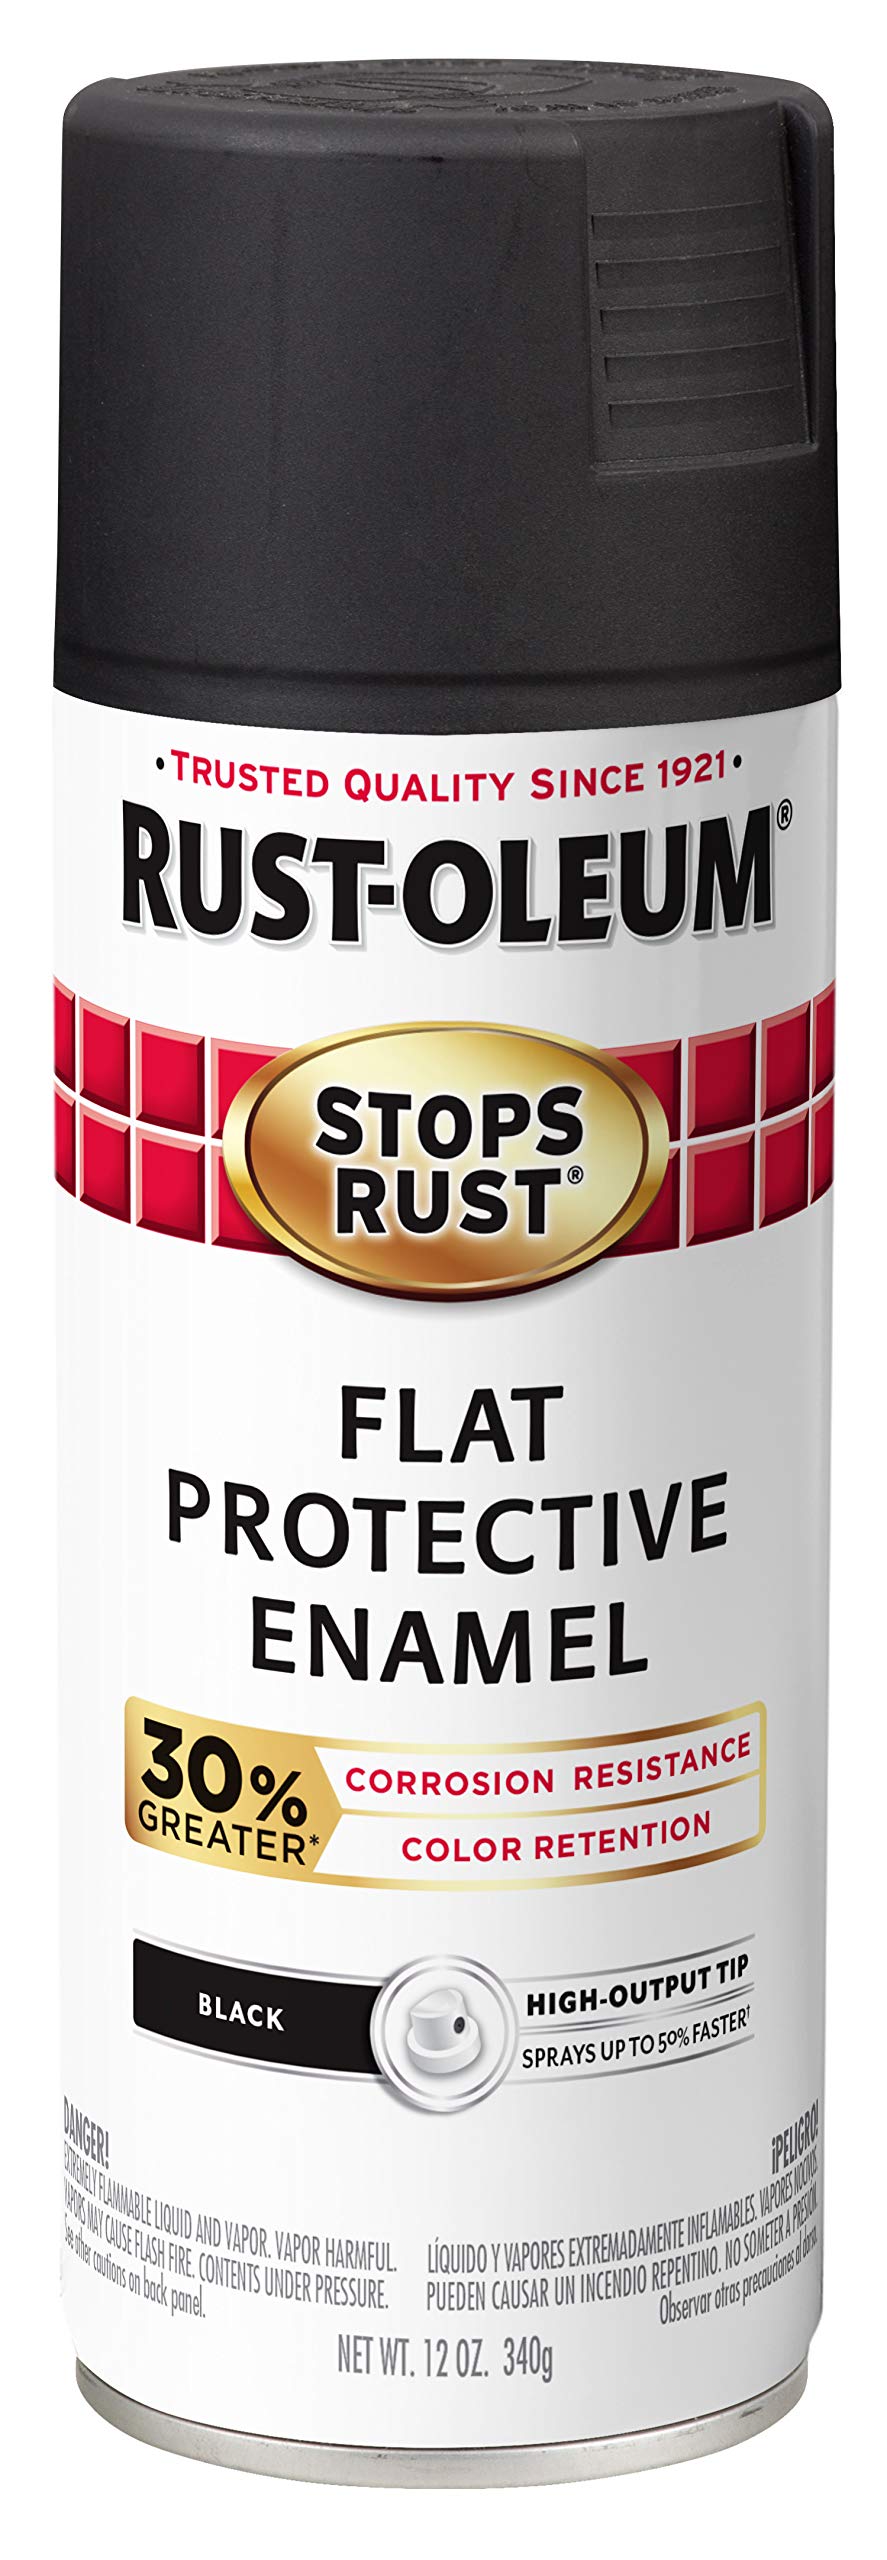 Rust-Oleum 338948 Stops Rust アドバンスト スプレー ペイント、フラット ブラック...